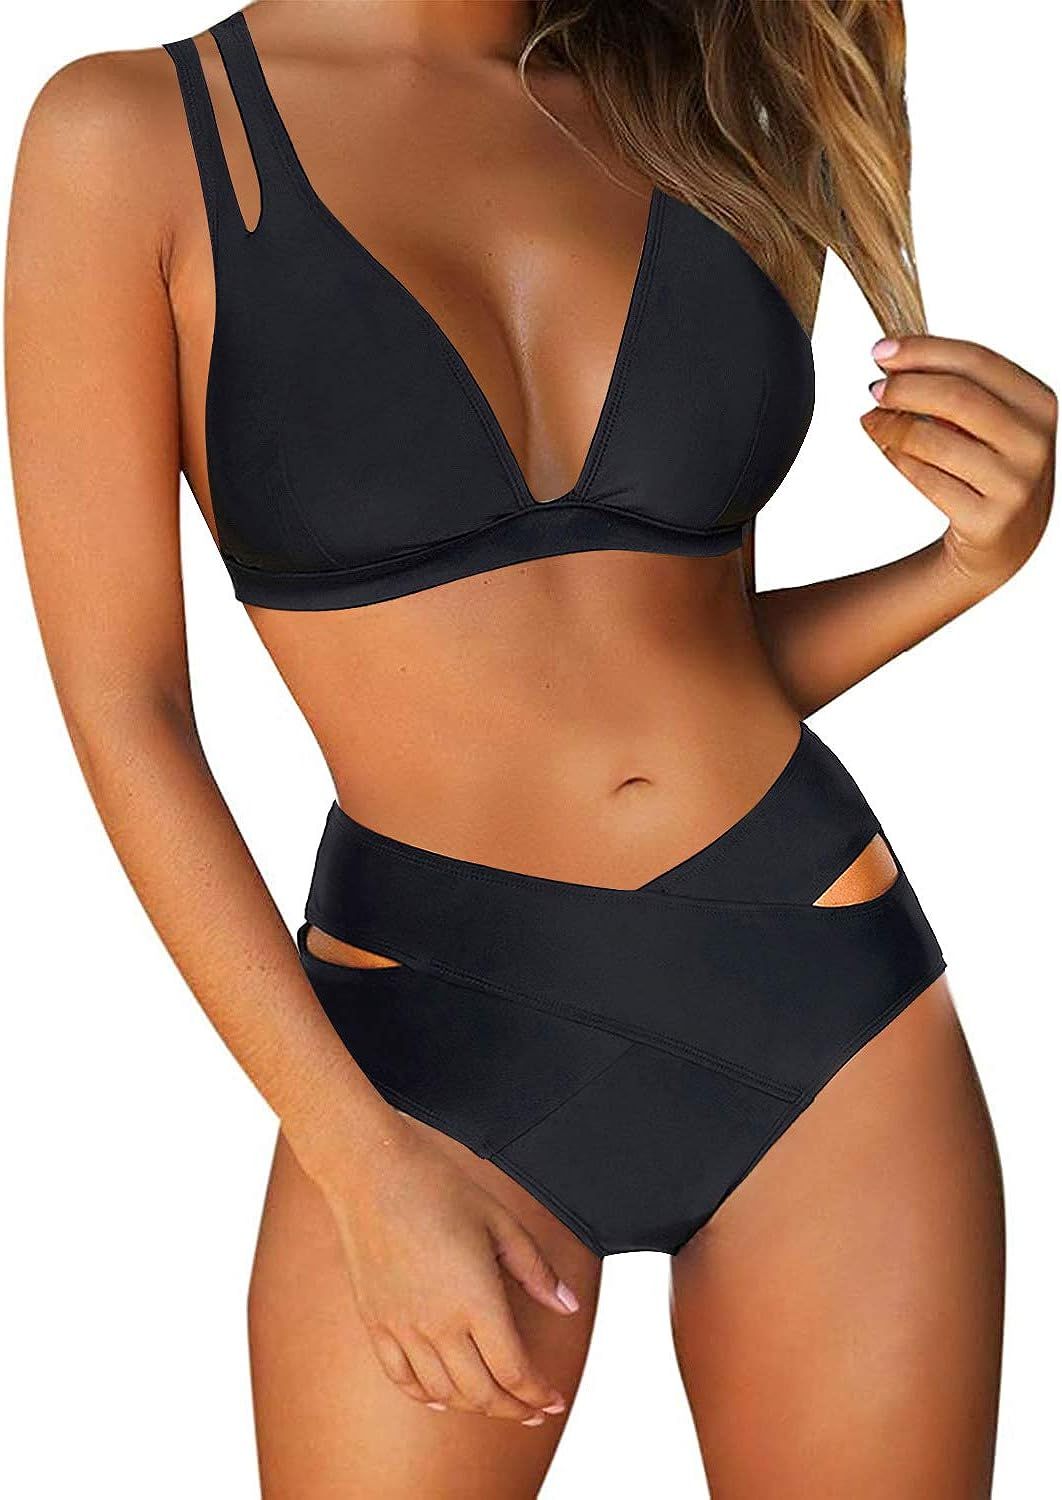 LookbookStore Women's Strappy Cutout Triangle Two Piece Bikini Set Swimsuit | Amazon (US)